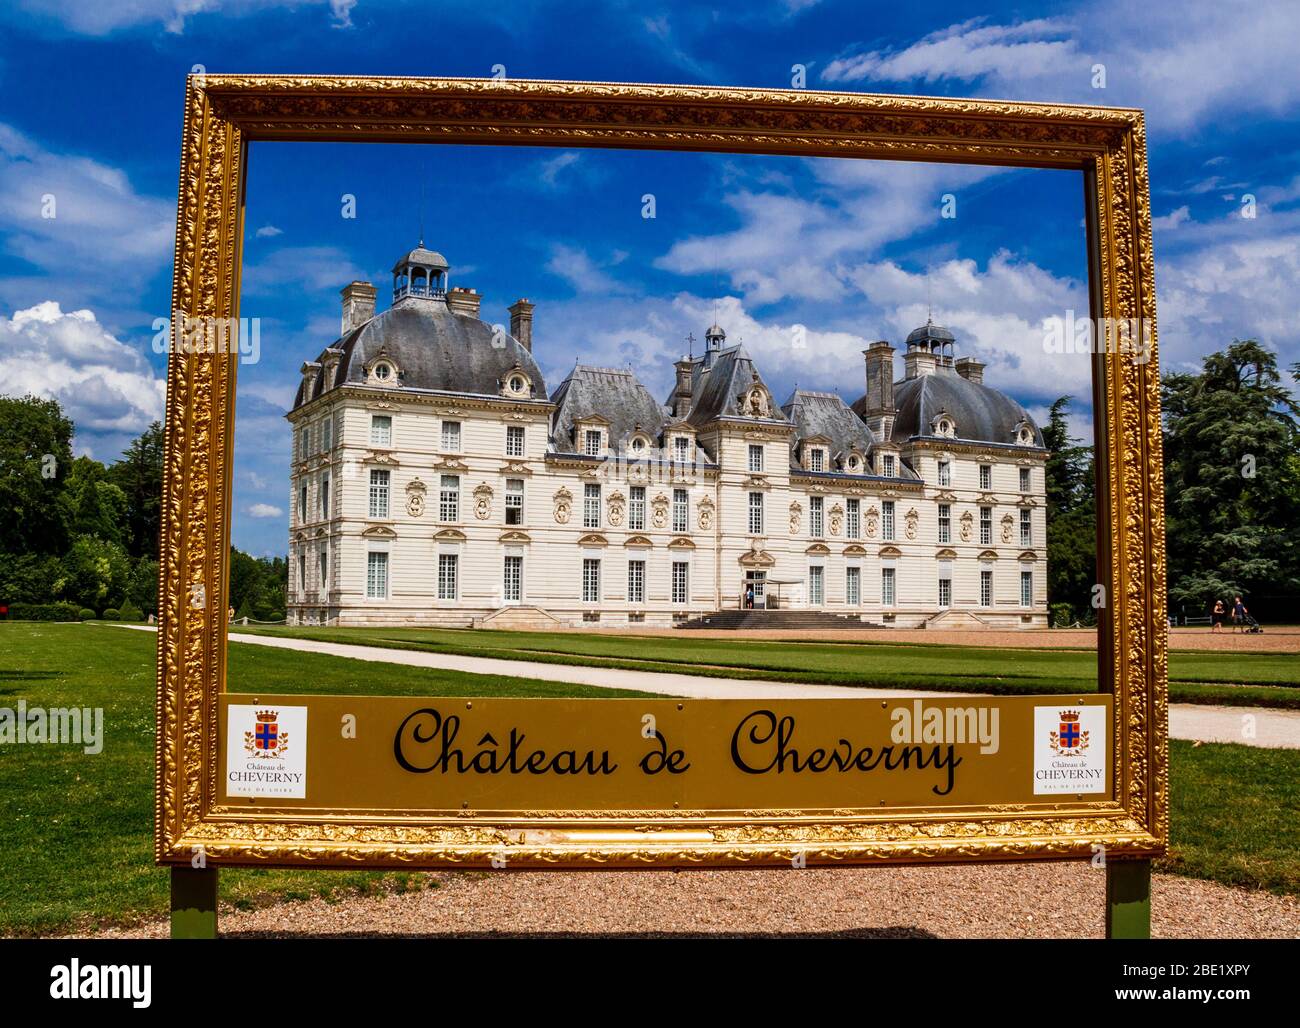 Cheverny, Loir-et-Cher, France - 26 mai 2018 : célèbre château de la vallée de la Loire Château de Cheverny dans le cadre photo. Banque D'Images